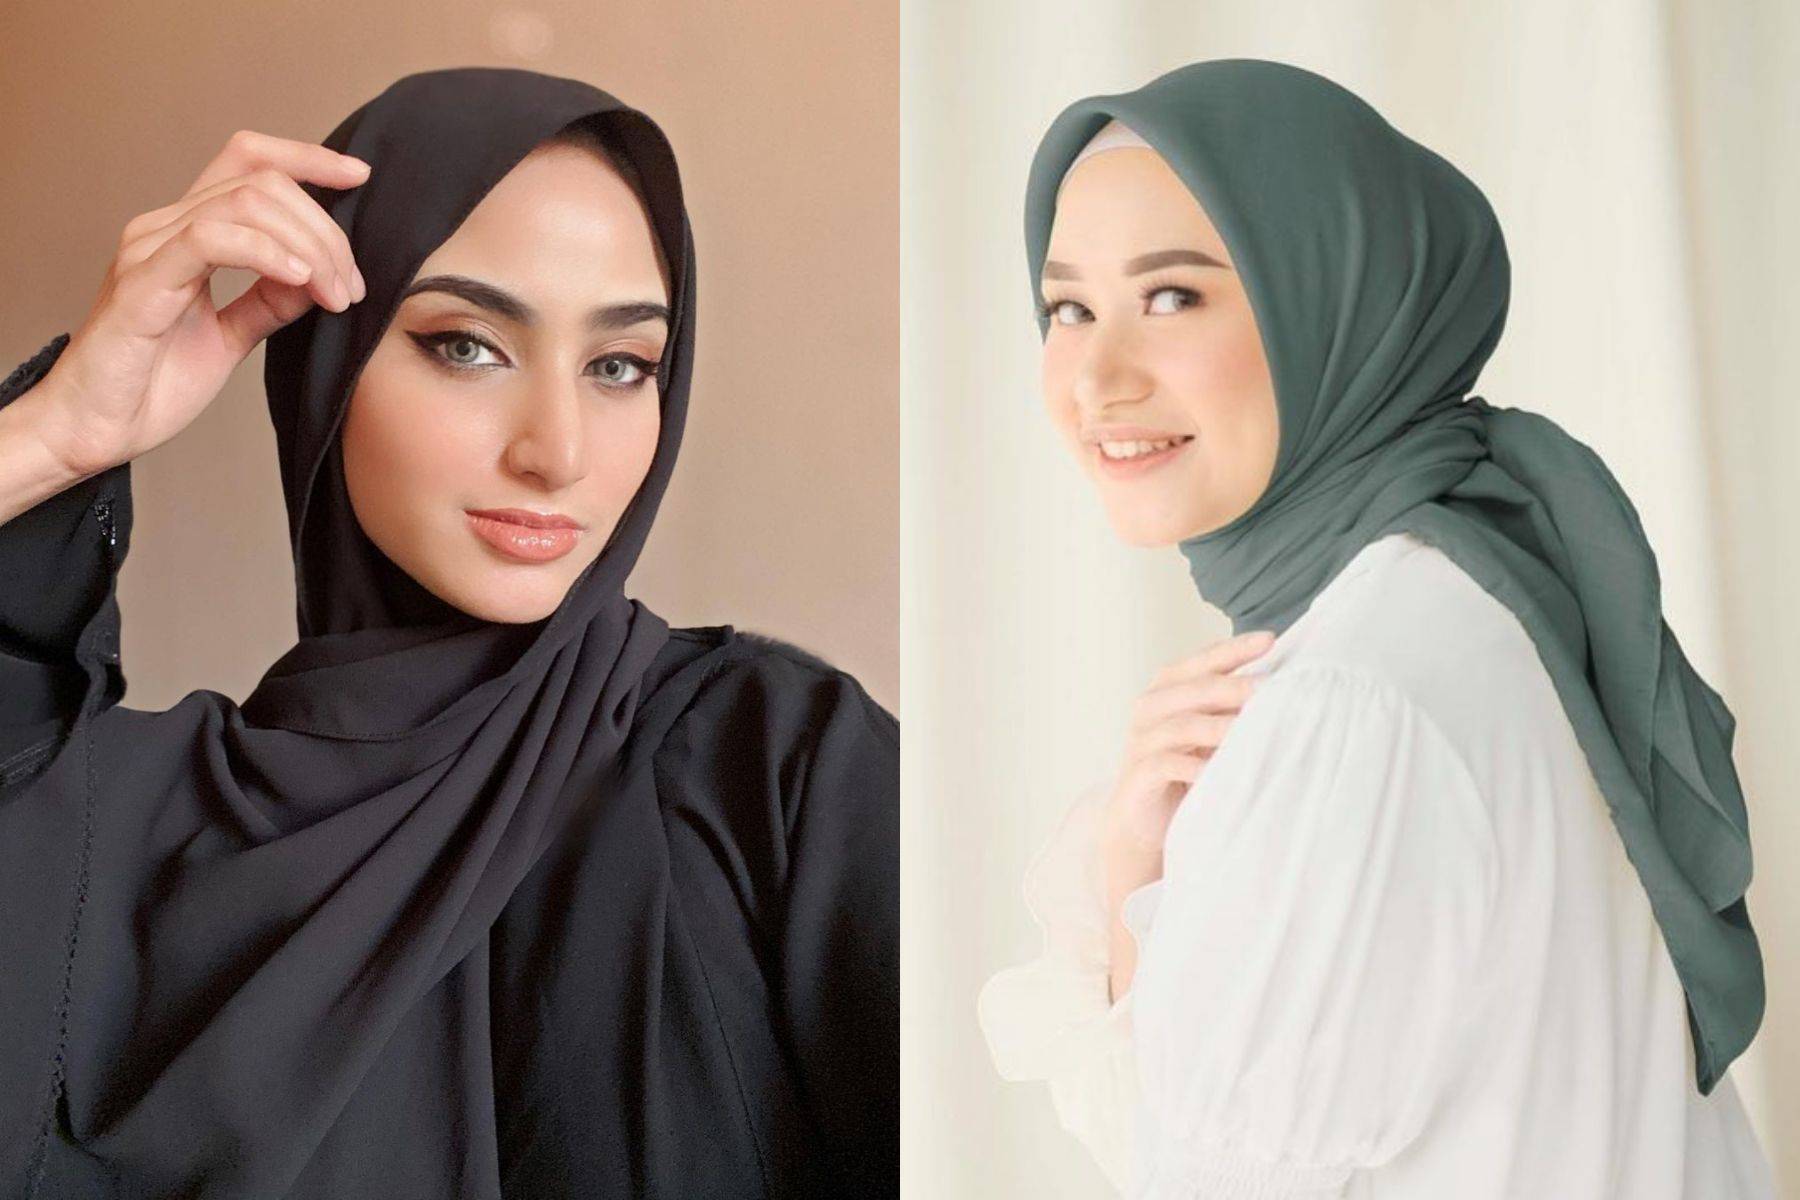 Как правильно и красиво научиться завязывать платок на голову мусульманке поэтапно? как закалывают иголку на платке мусульманки? способы ношения платков на голове мусульманки. девушки мусульманки в пл